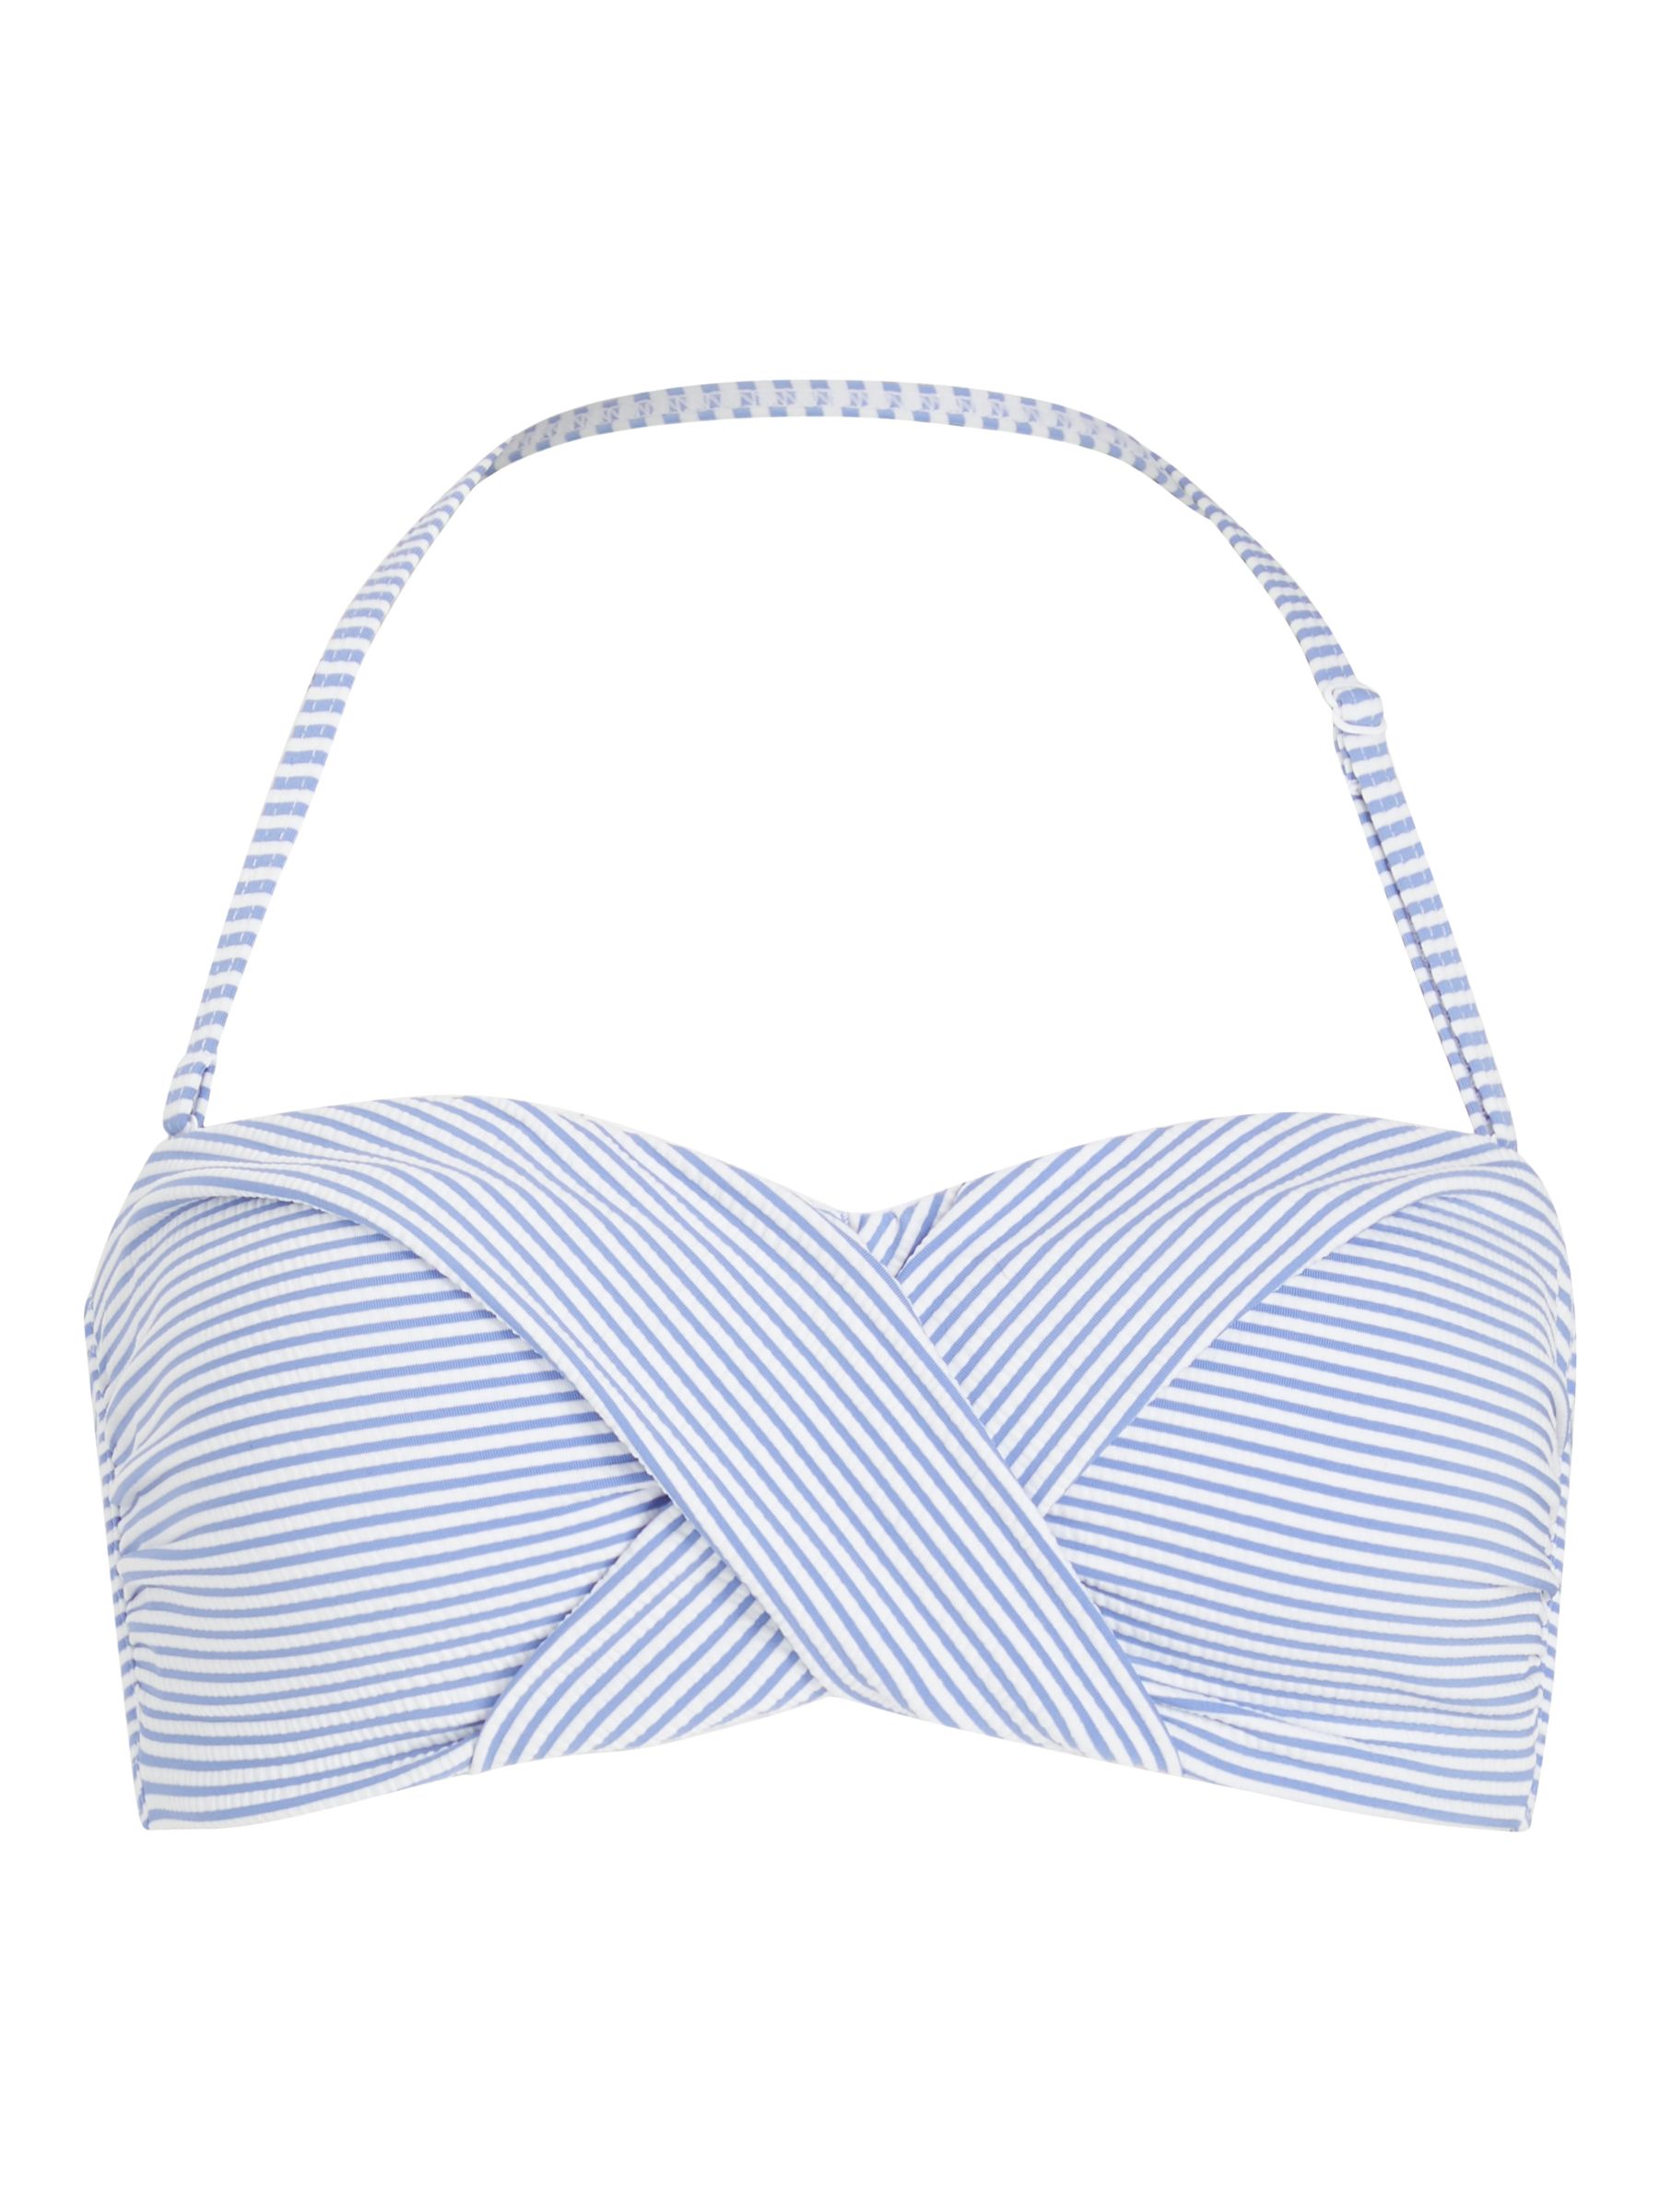 John Lewis & Partners St Tropez Seersucker Twist Bandeau Bikini Top, Blue